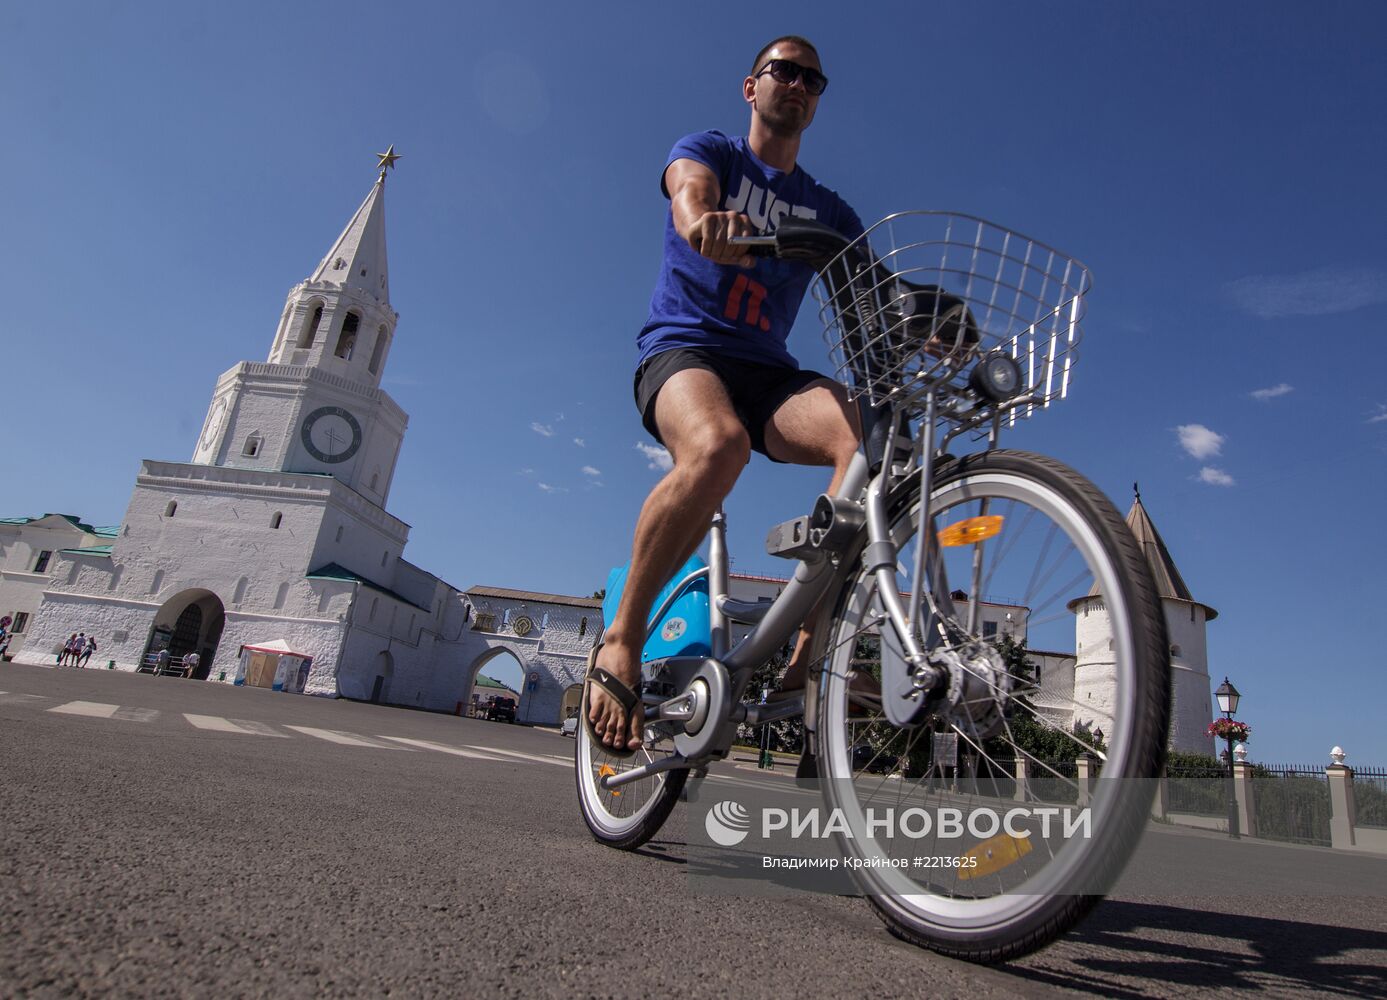 В Казани открылся прокат велосипедов Veli’K